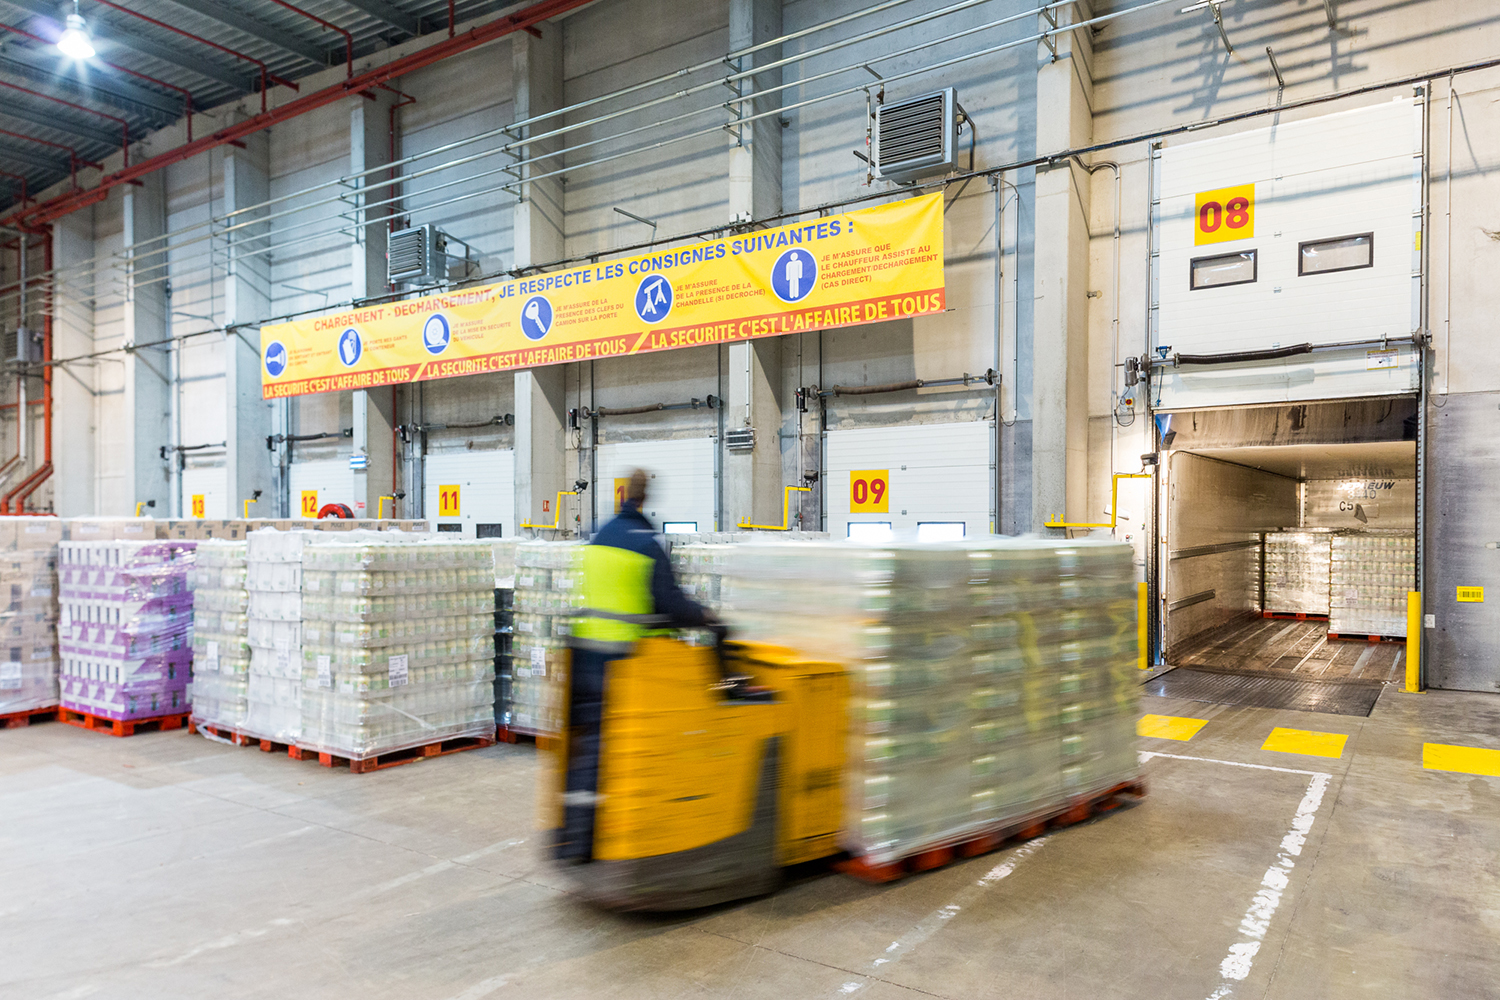 Reportage industriel dans un entrepôt de DHL Supply Chain pour montrer leur capacité logistique.